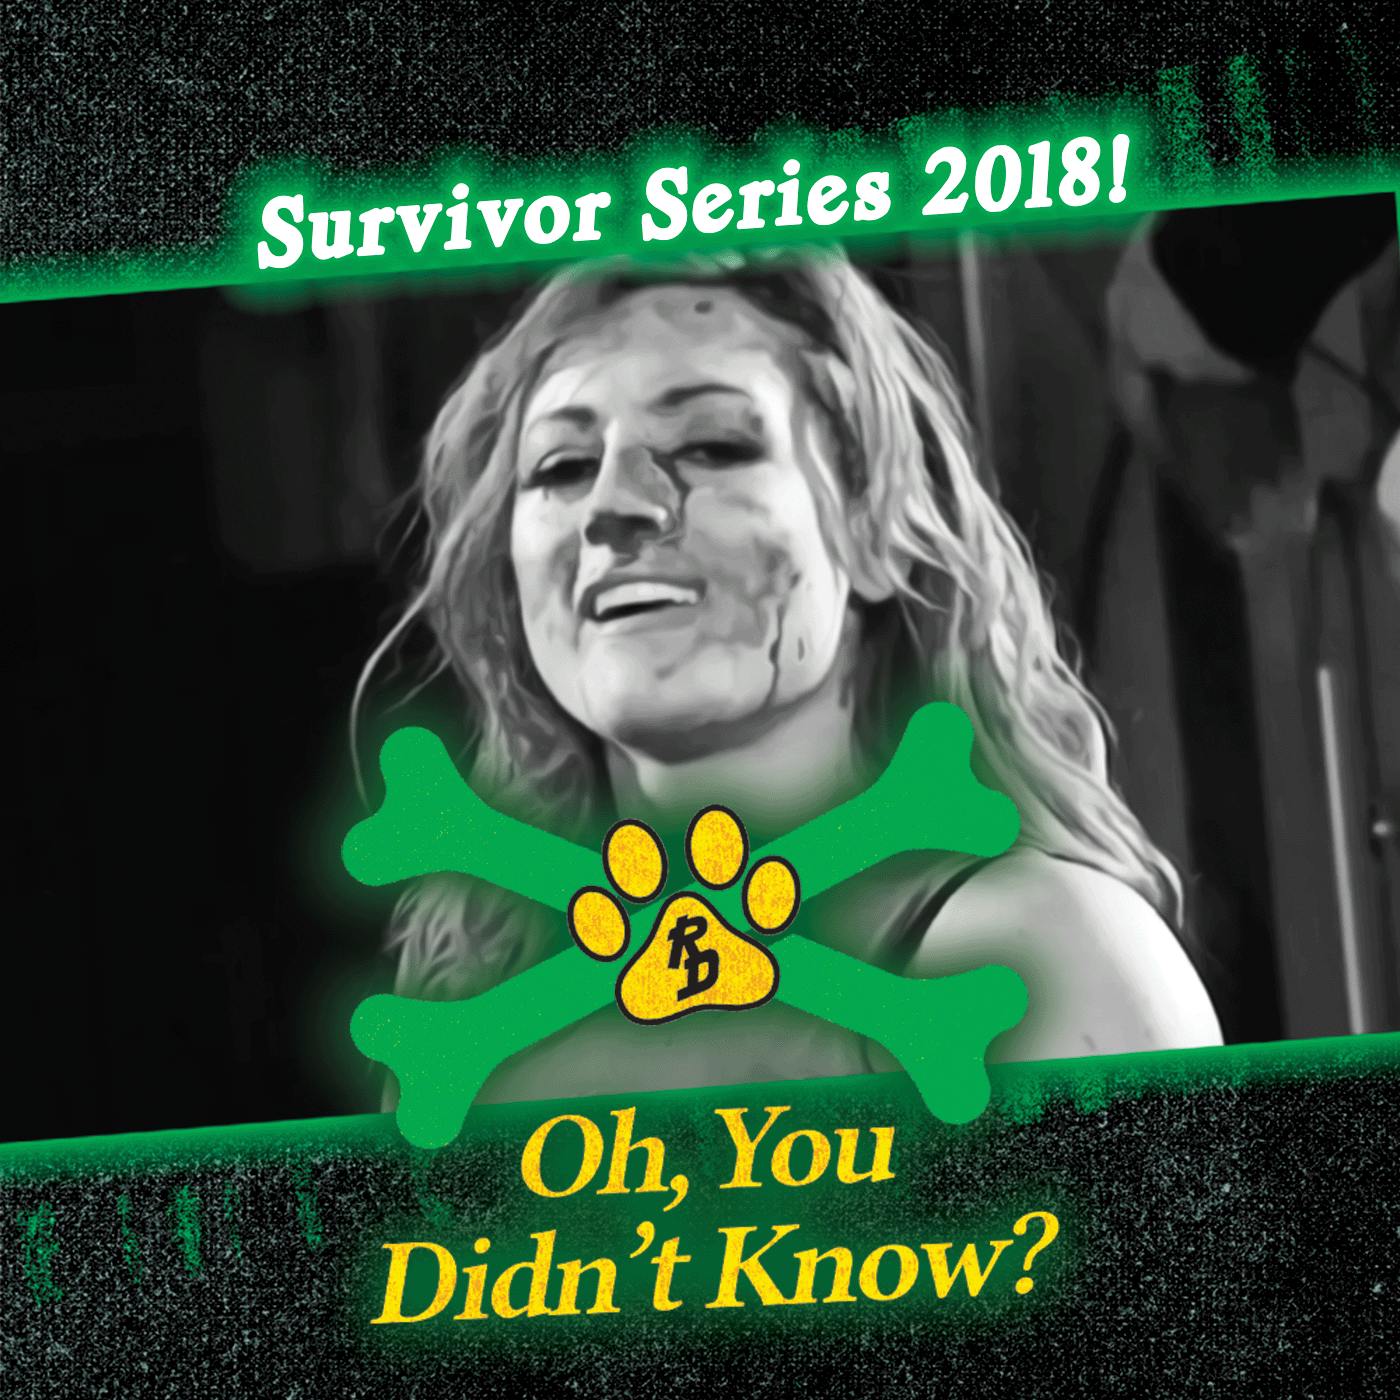 WWE Survivor Series 2018!